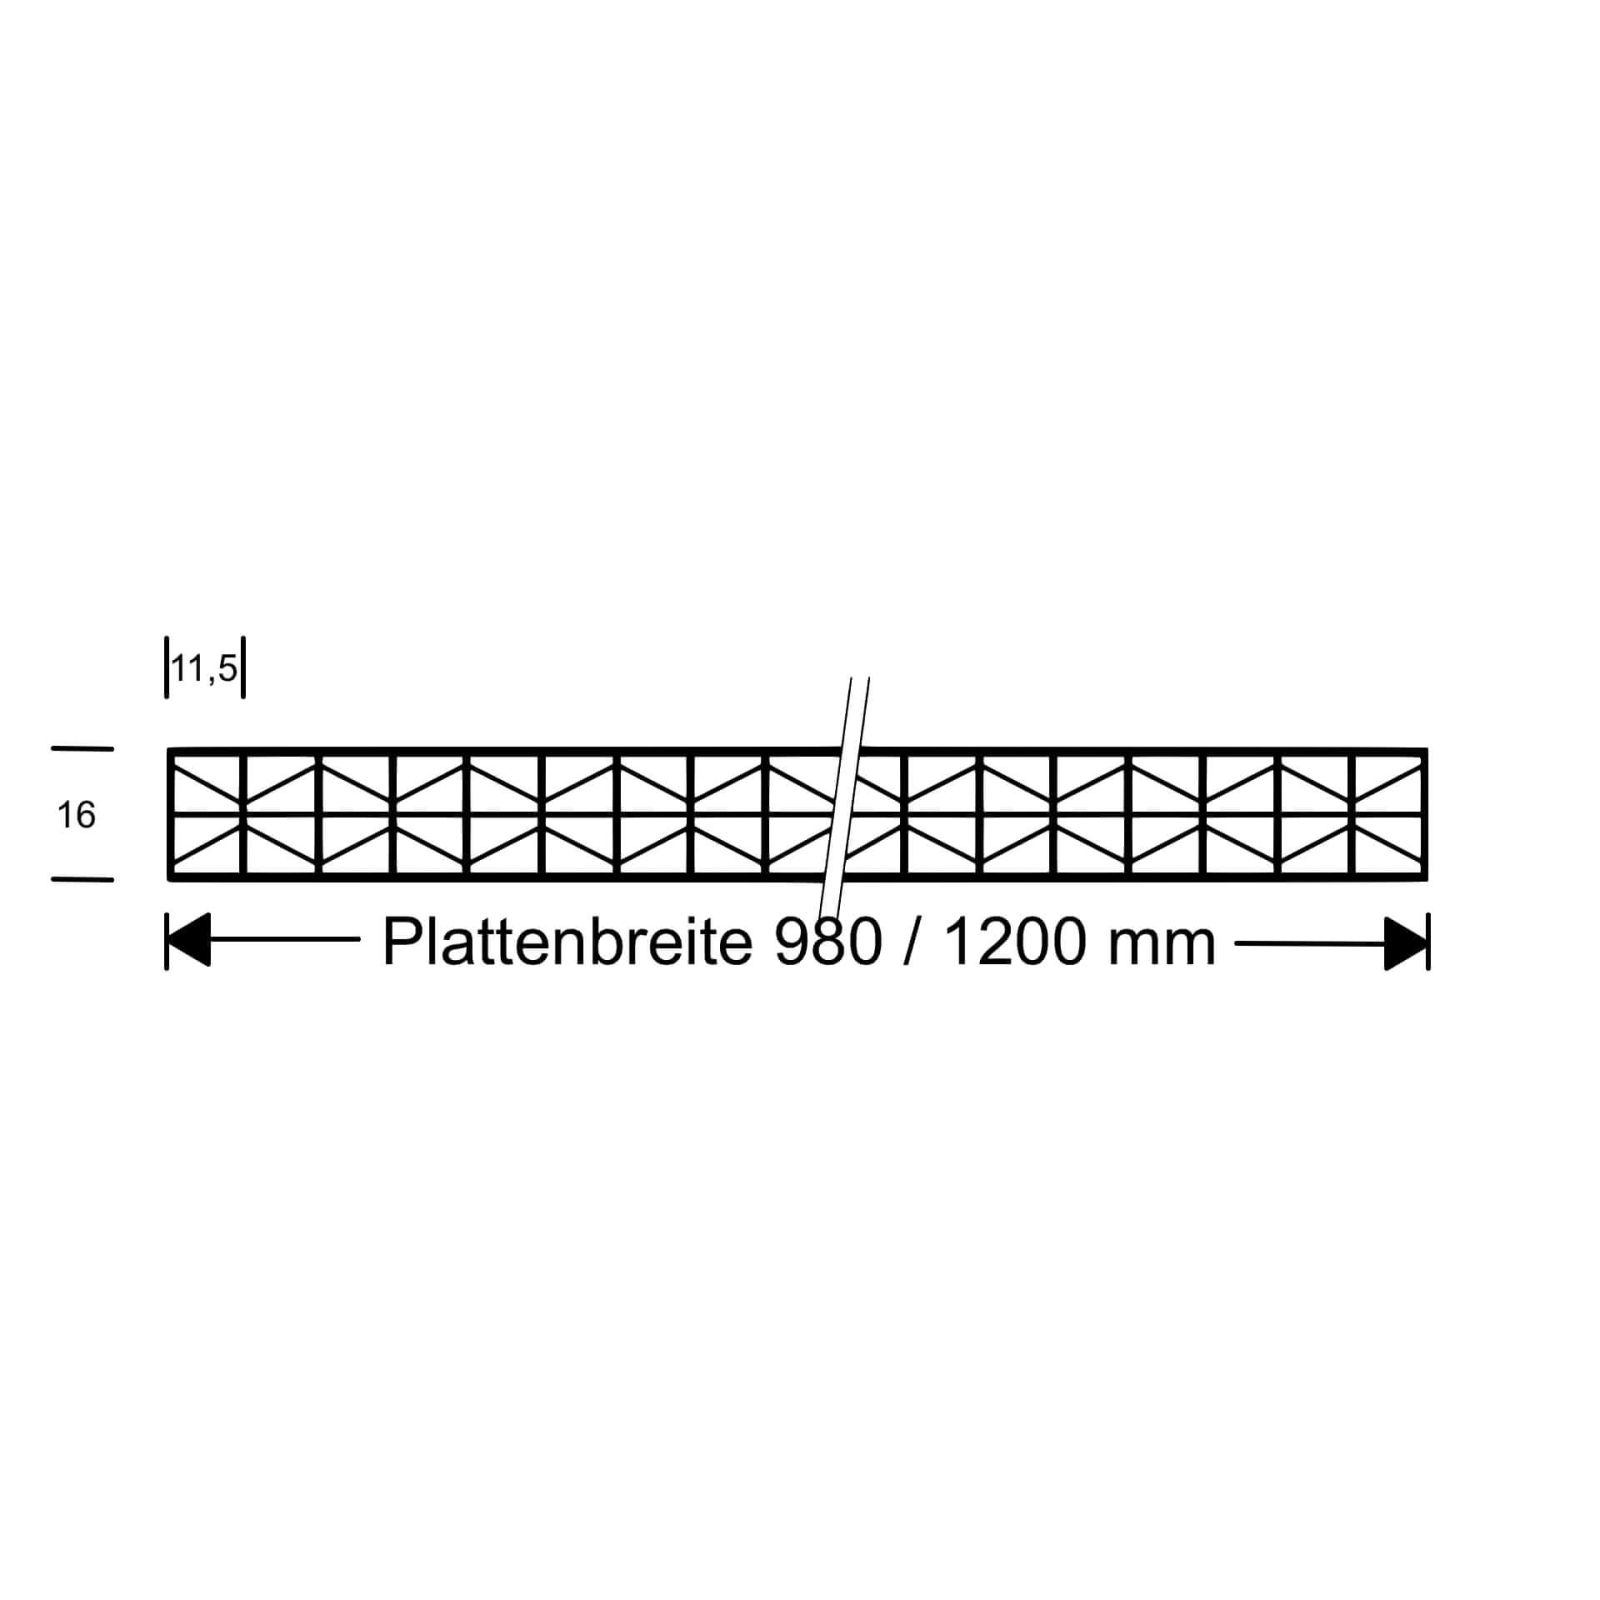 Polycarbonat Stegplatte | 16 mm | Profil Mendiger | Sparpaket | Plattenbreite 980 mm | Klar | Extra stark | Breite 3,09 m | Länge 2,00 m #10